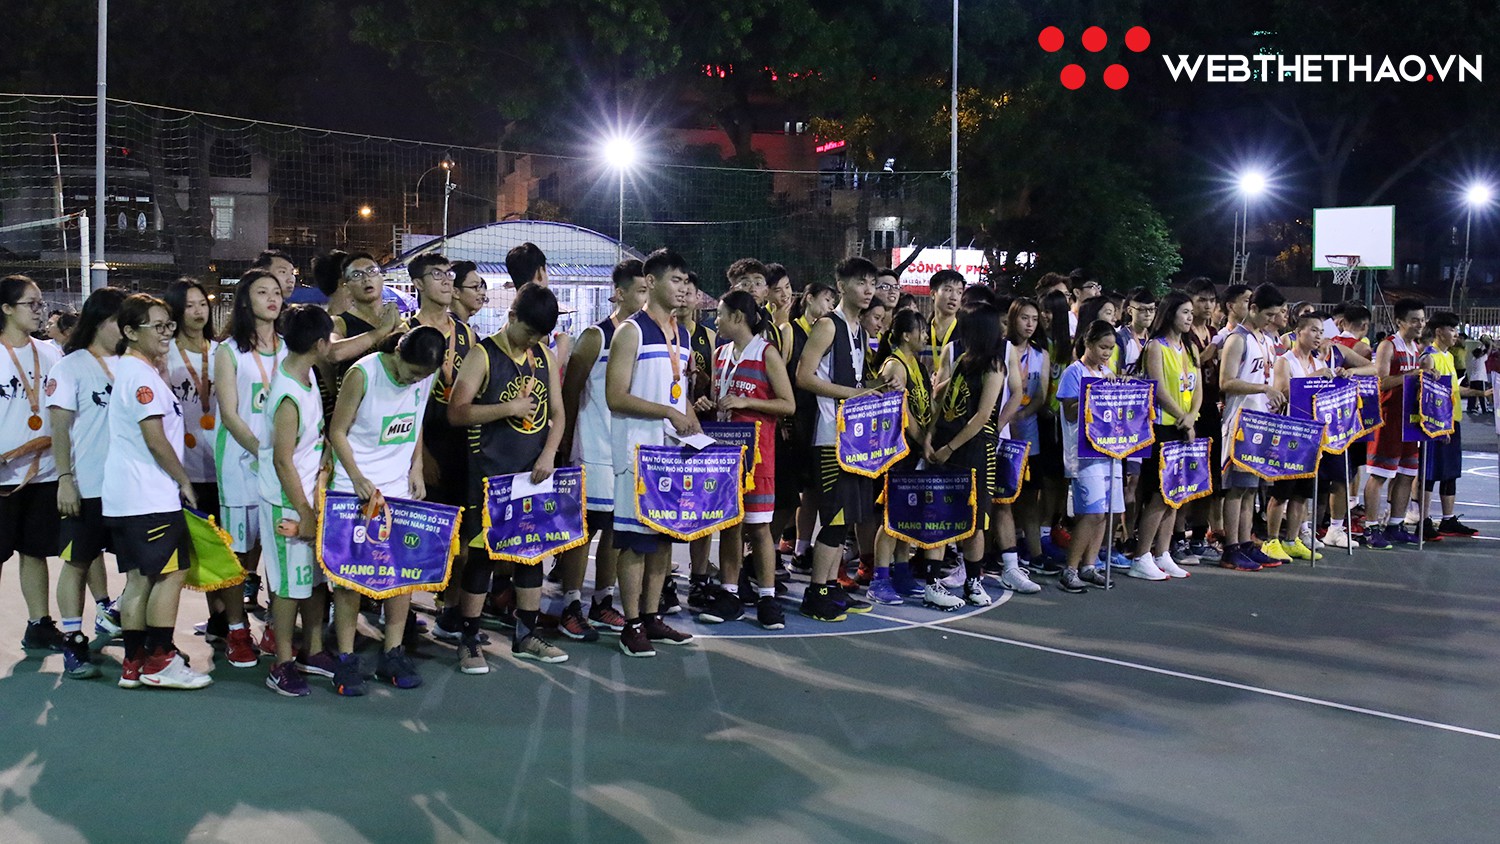 Bế mạc Giải bóng rổ vô địch 3x3 Tp.Hồ Chí Minh 2018, thú vị với màn trao giải Nam Vương và Ảnh Hậu - Ảnh 1.